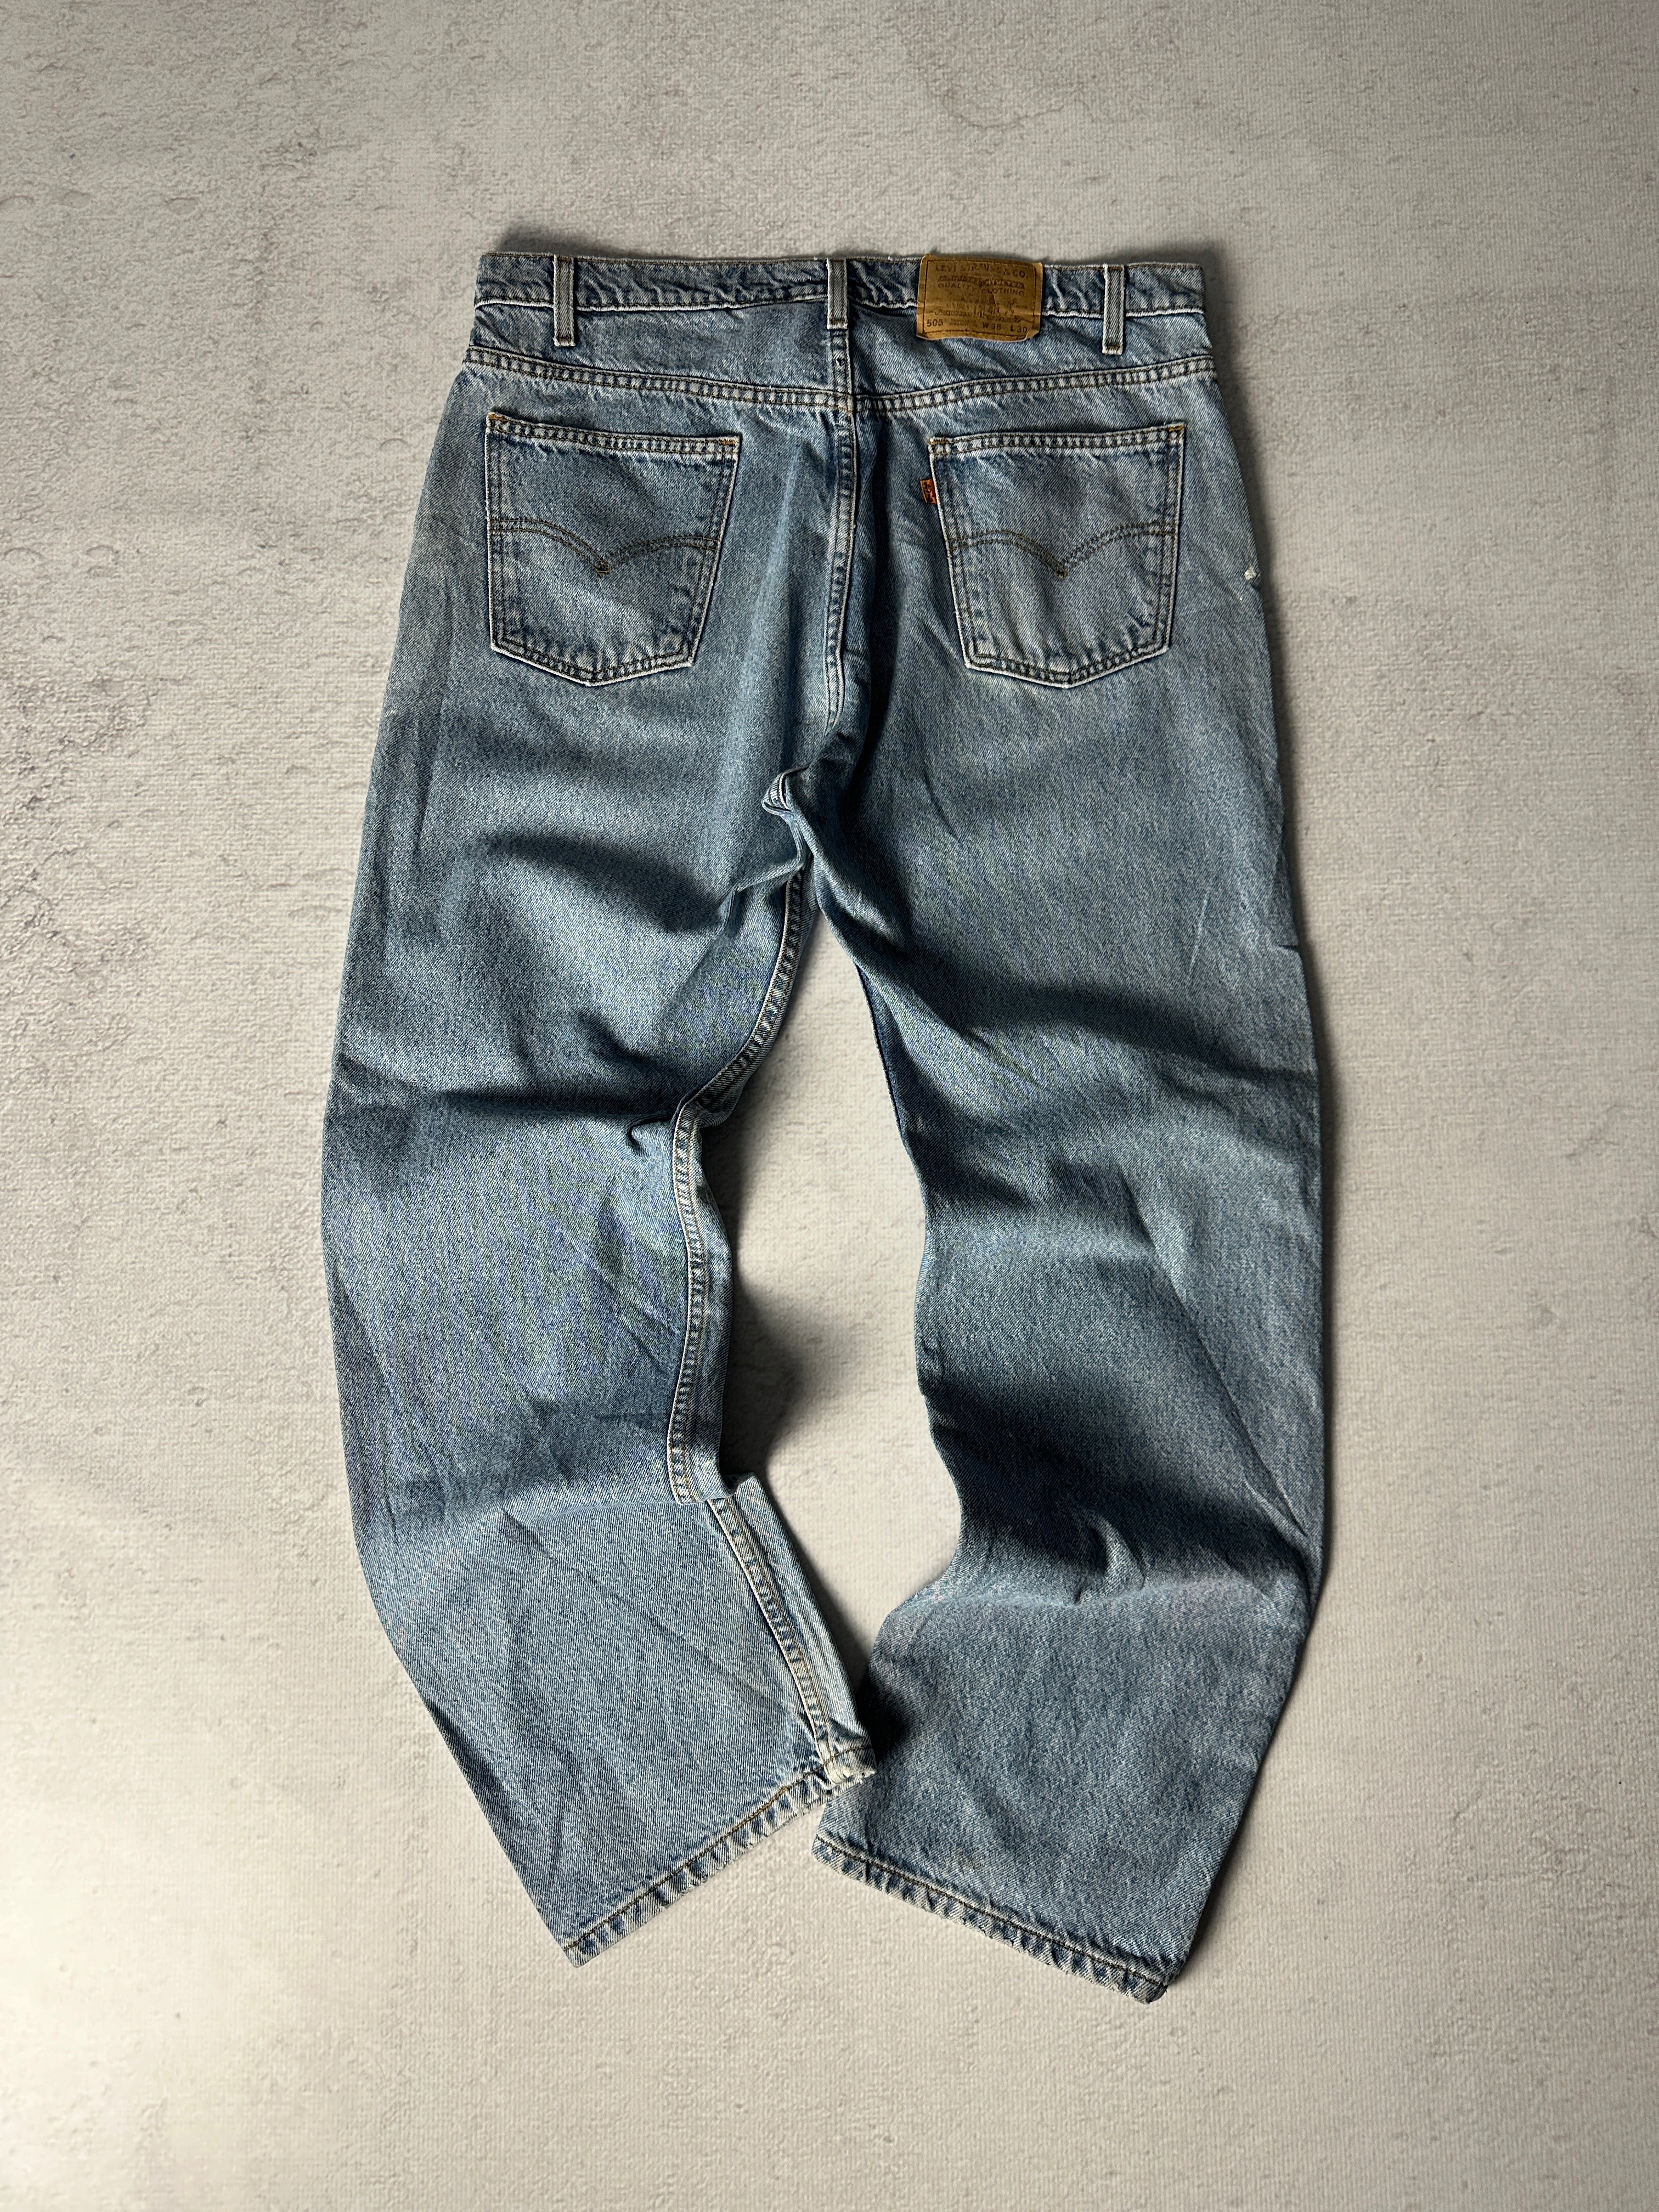 Vintage Levis Orange Tab Jeans - Men's 38W32L